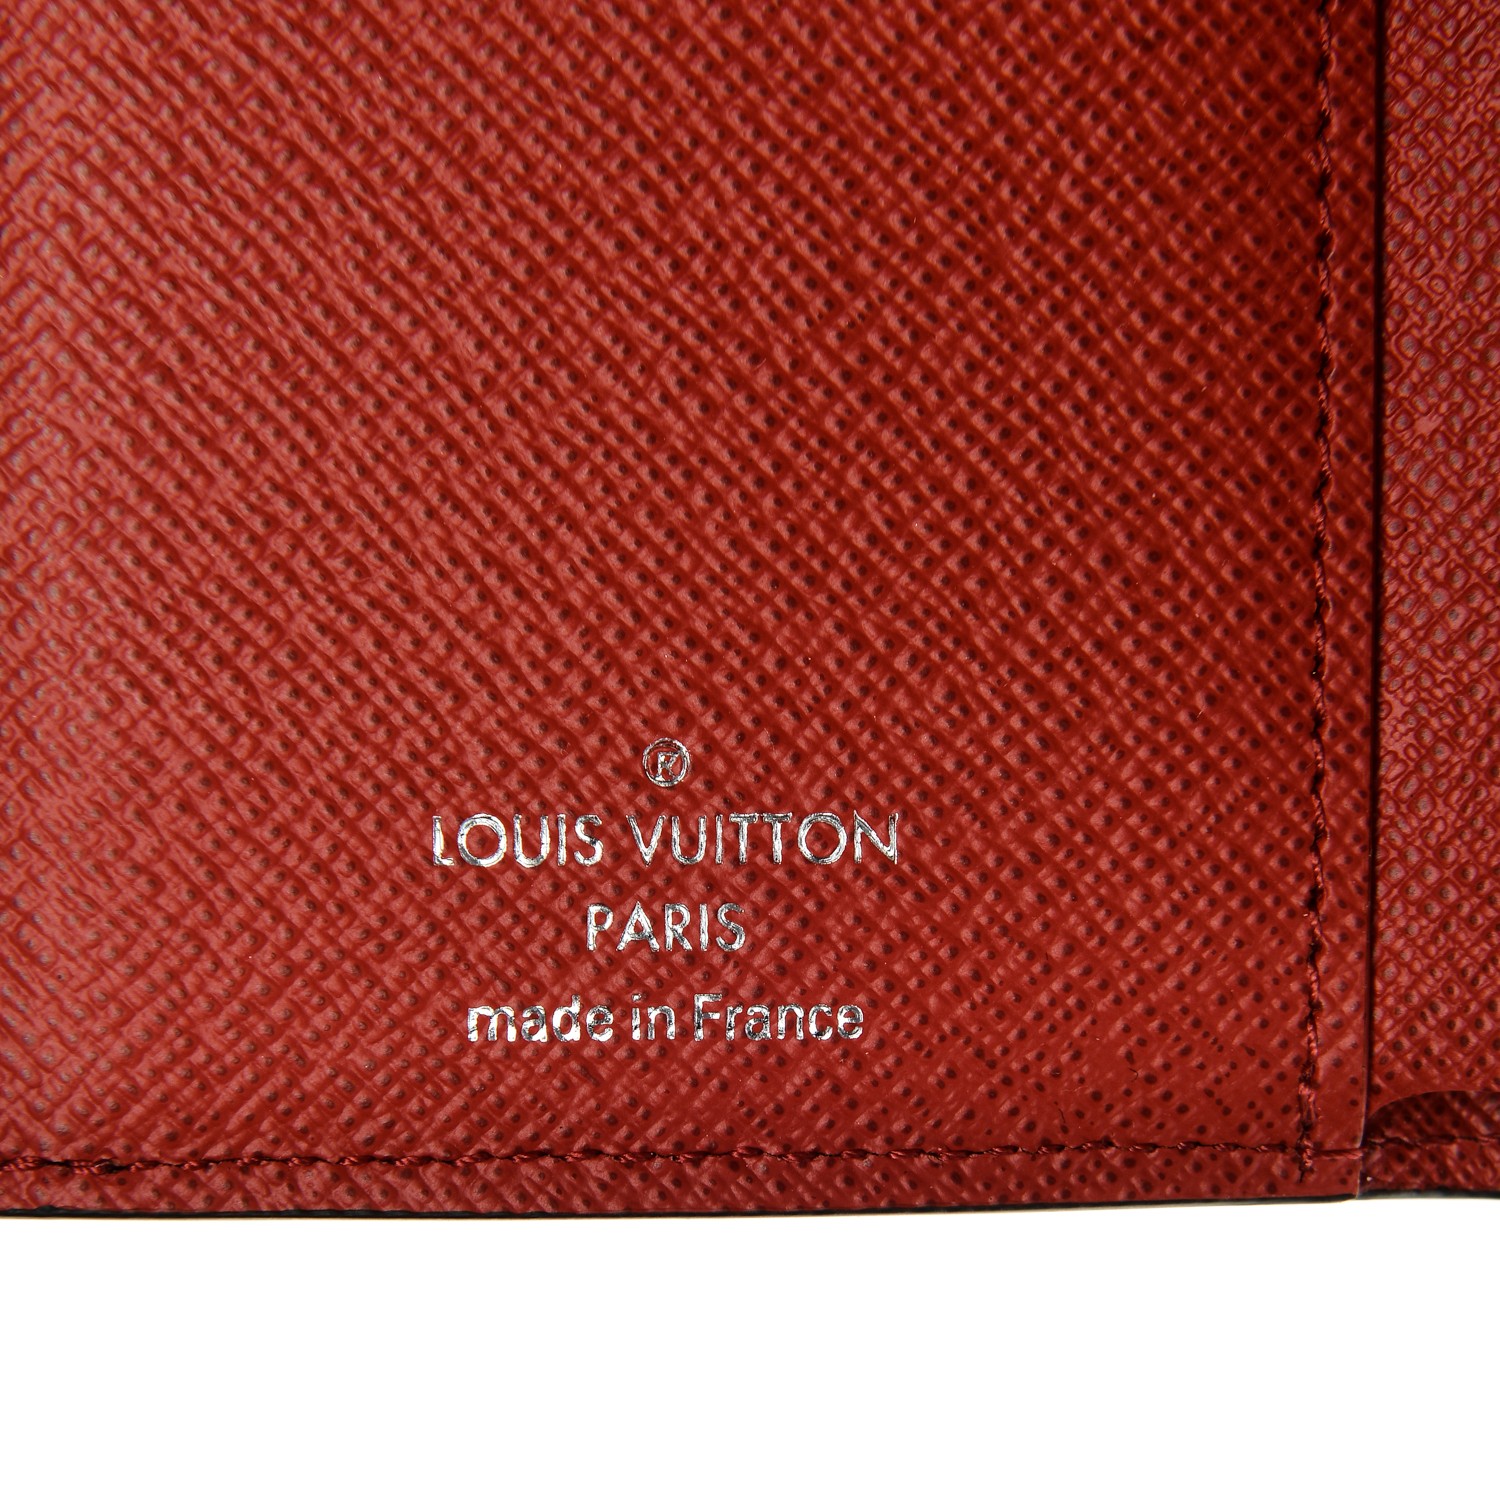 Louis Vuitton x Supreme Epi Keychain Red